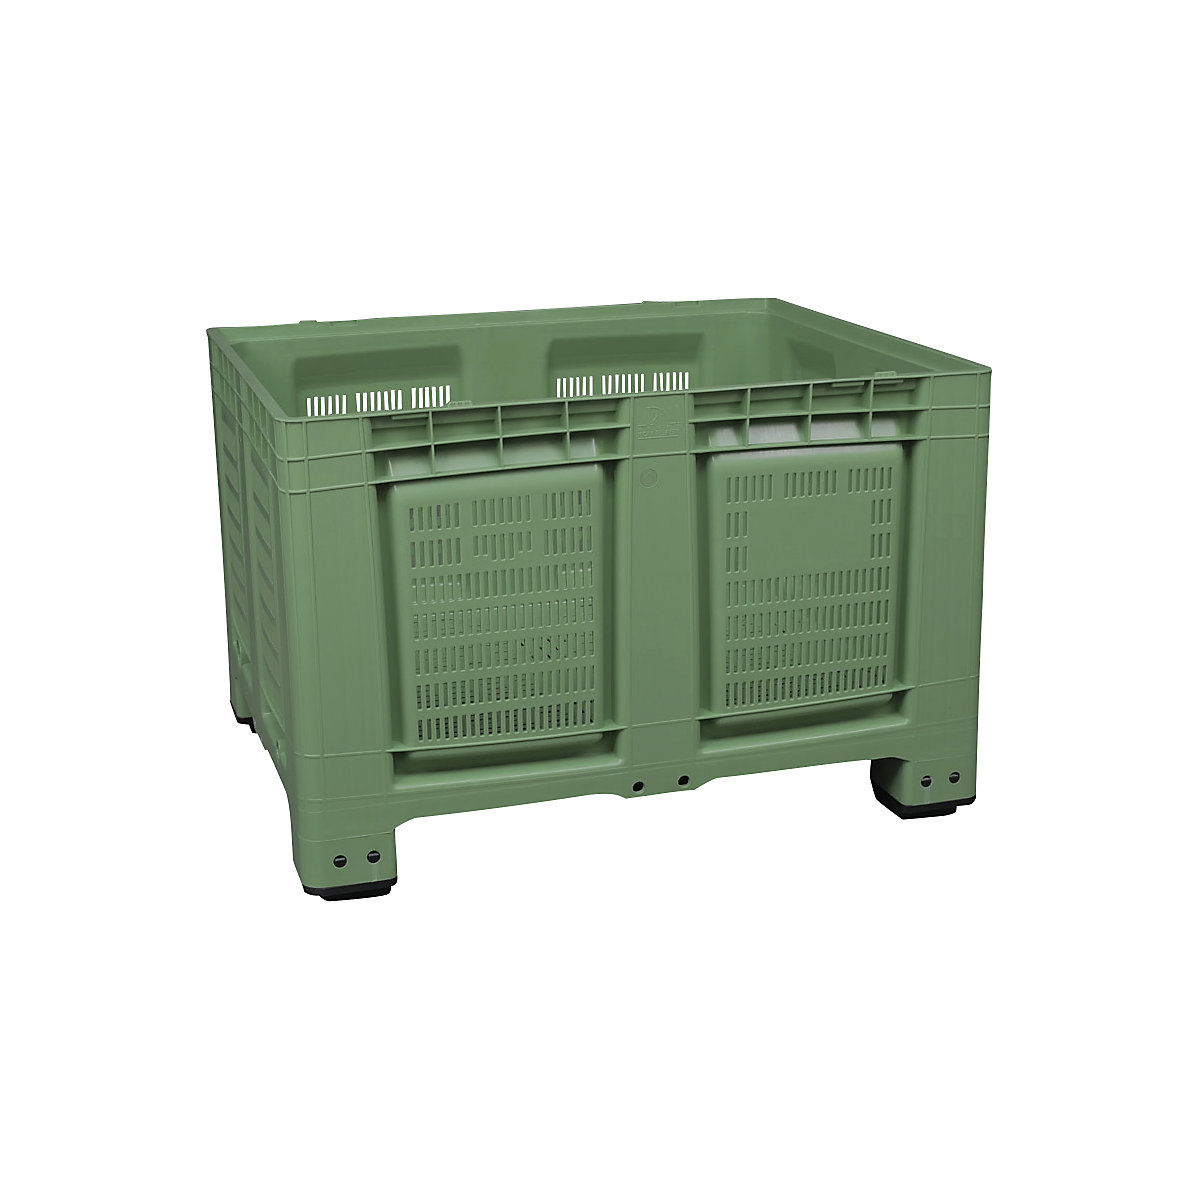 Palletcontainer, van HDPE, l x b x h = 1200 x 1000 x 790 mm, 4 voeten, met sleuven, groen-8